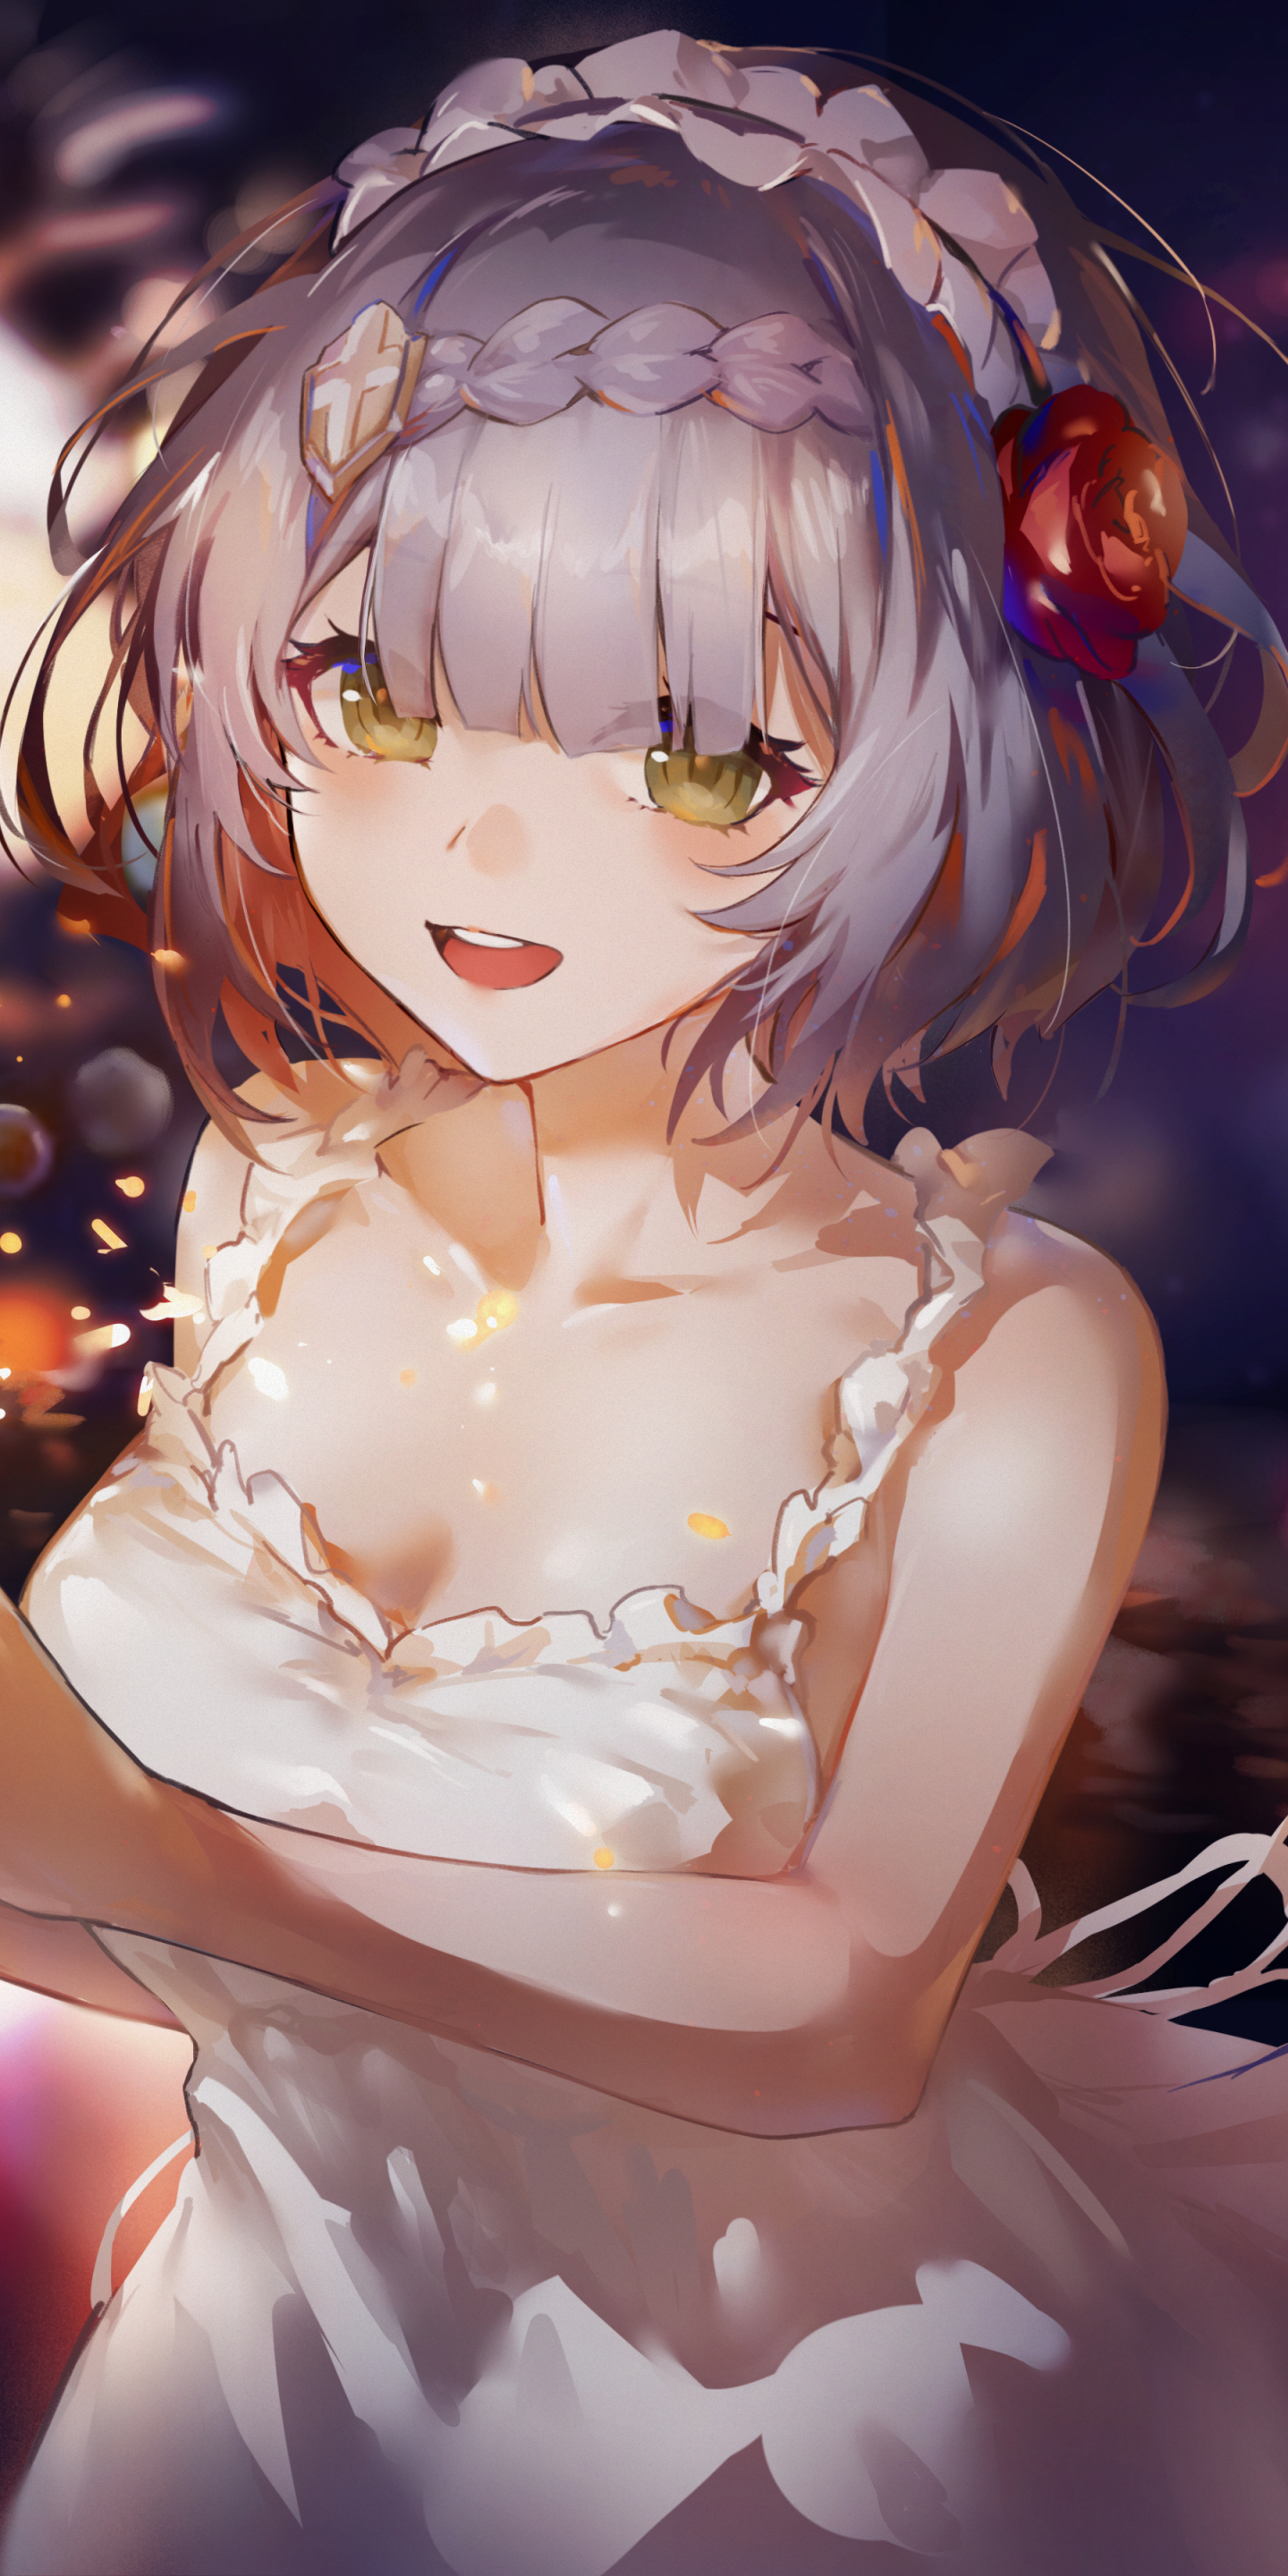 White dress, cute anime girl, art, 1440x2880 wallpaper